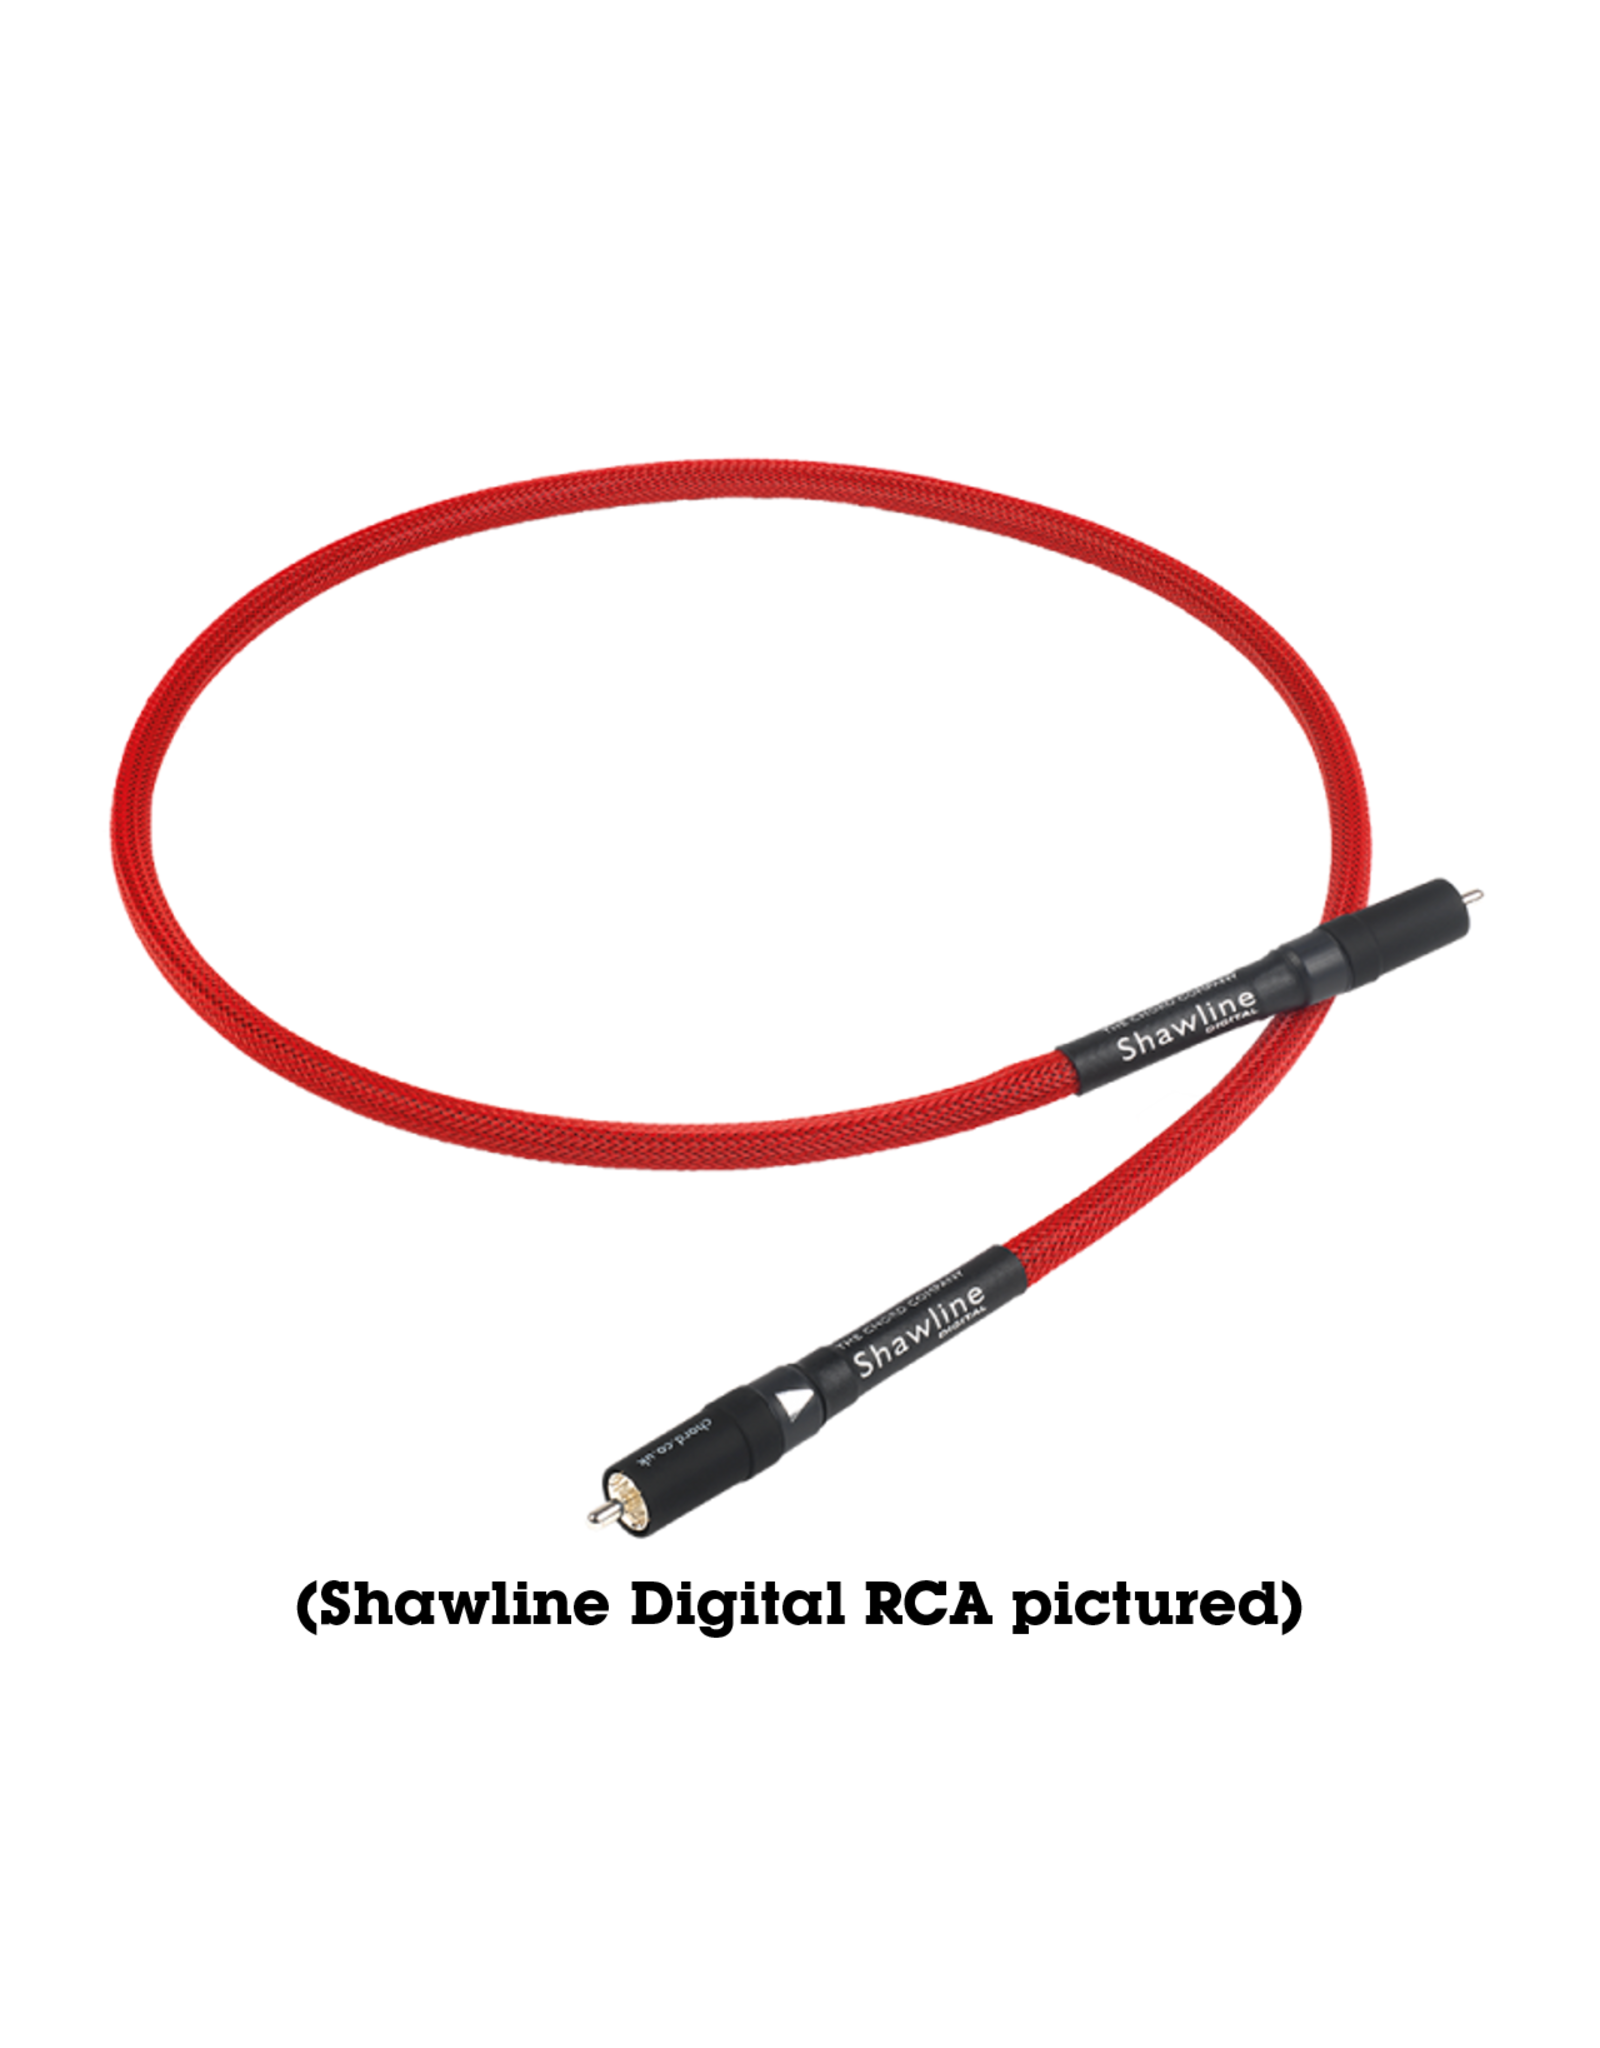 Chord Company Chord Shawline Digital Cable